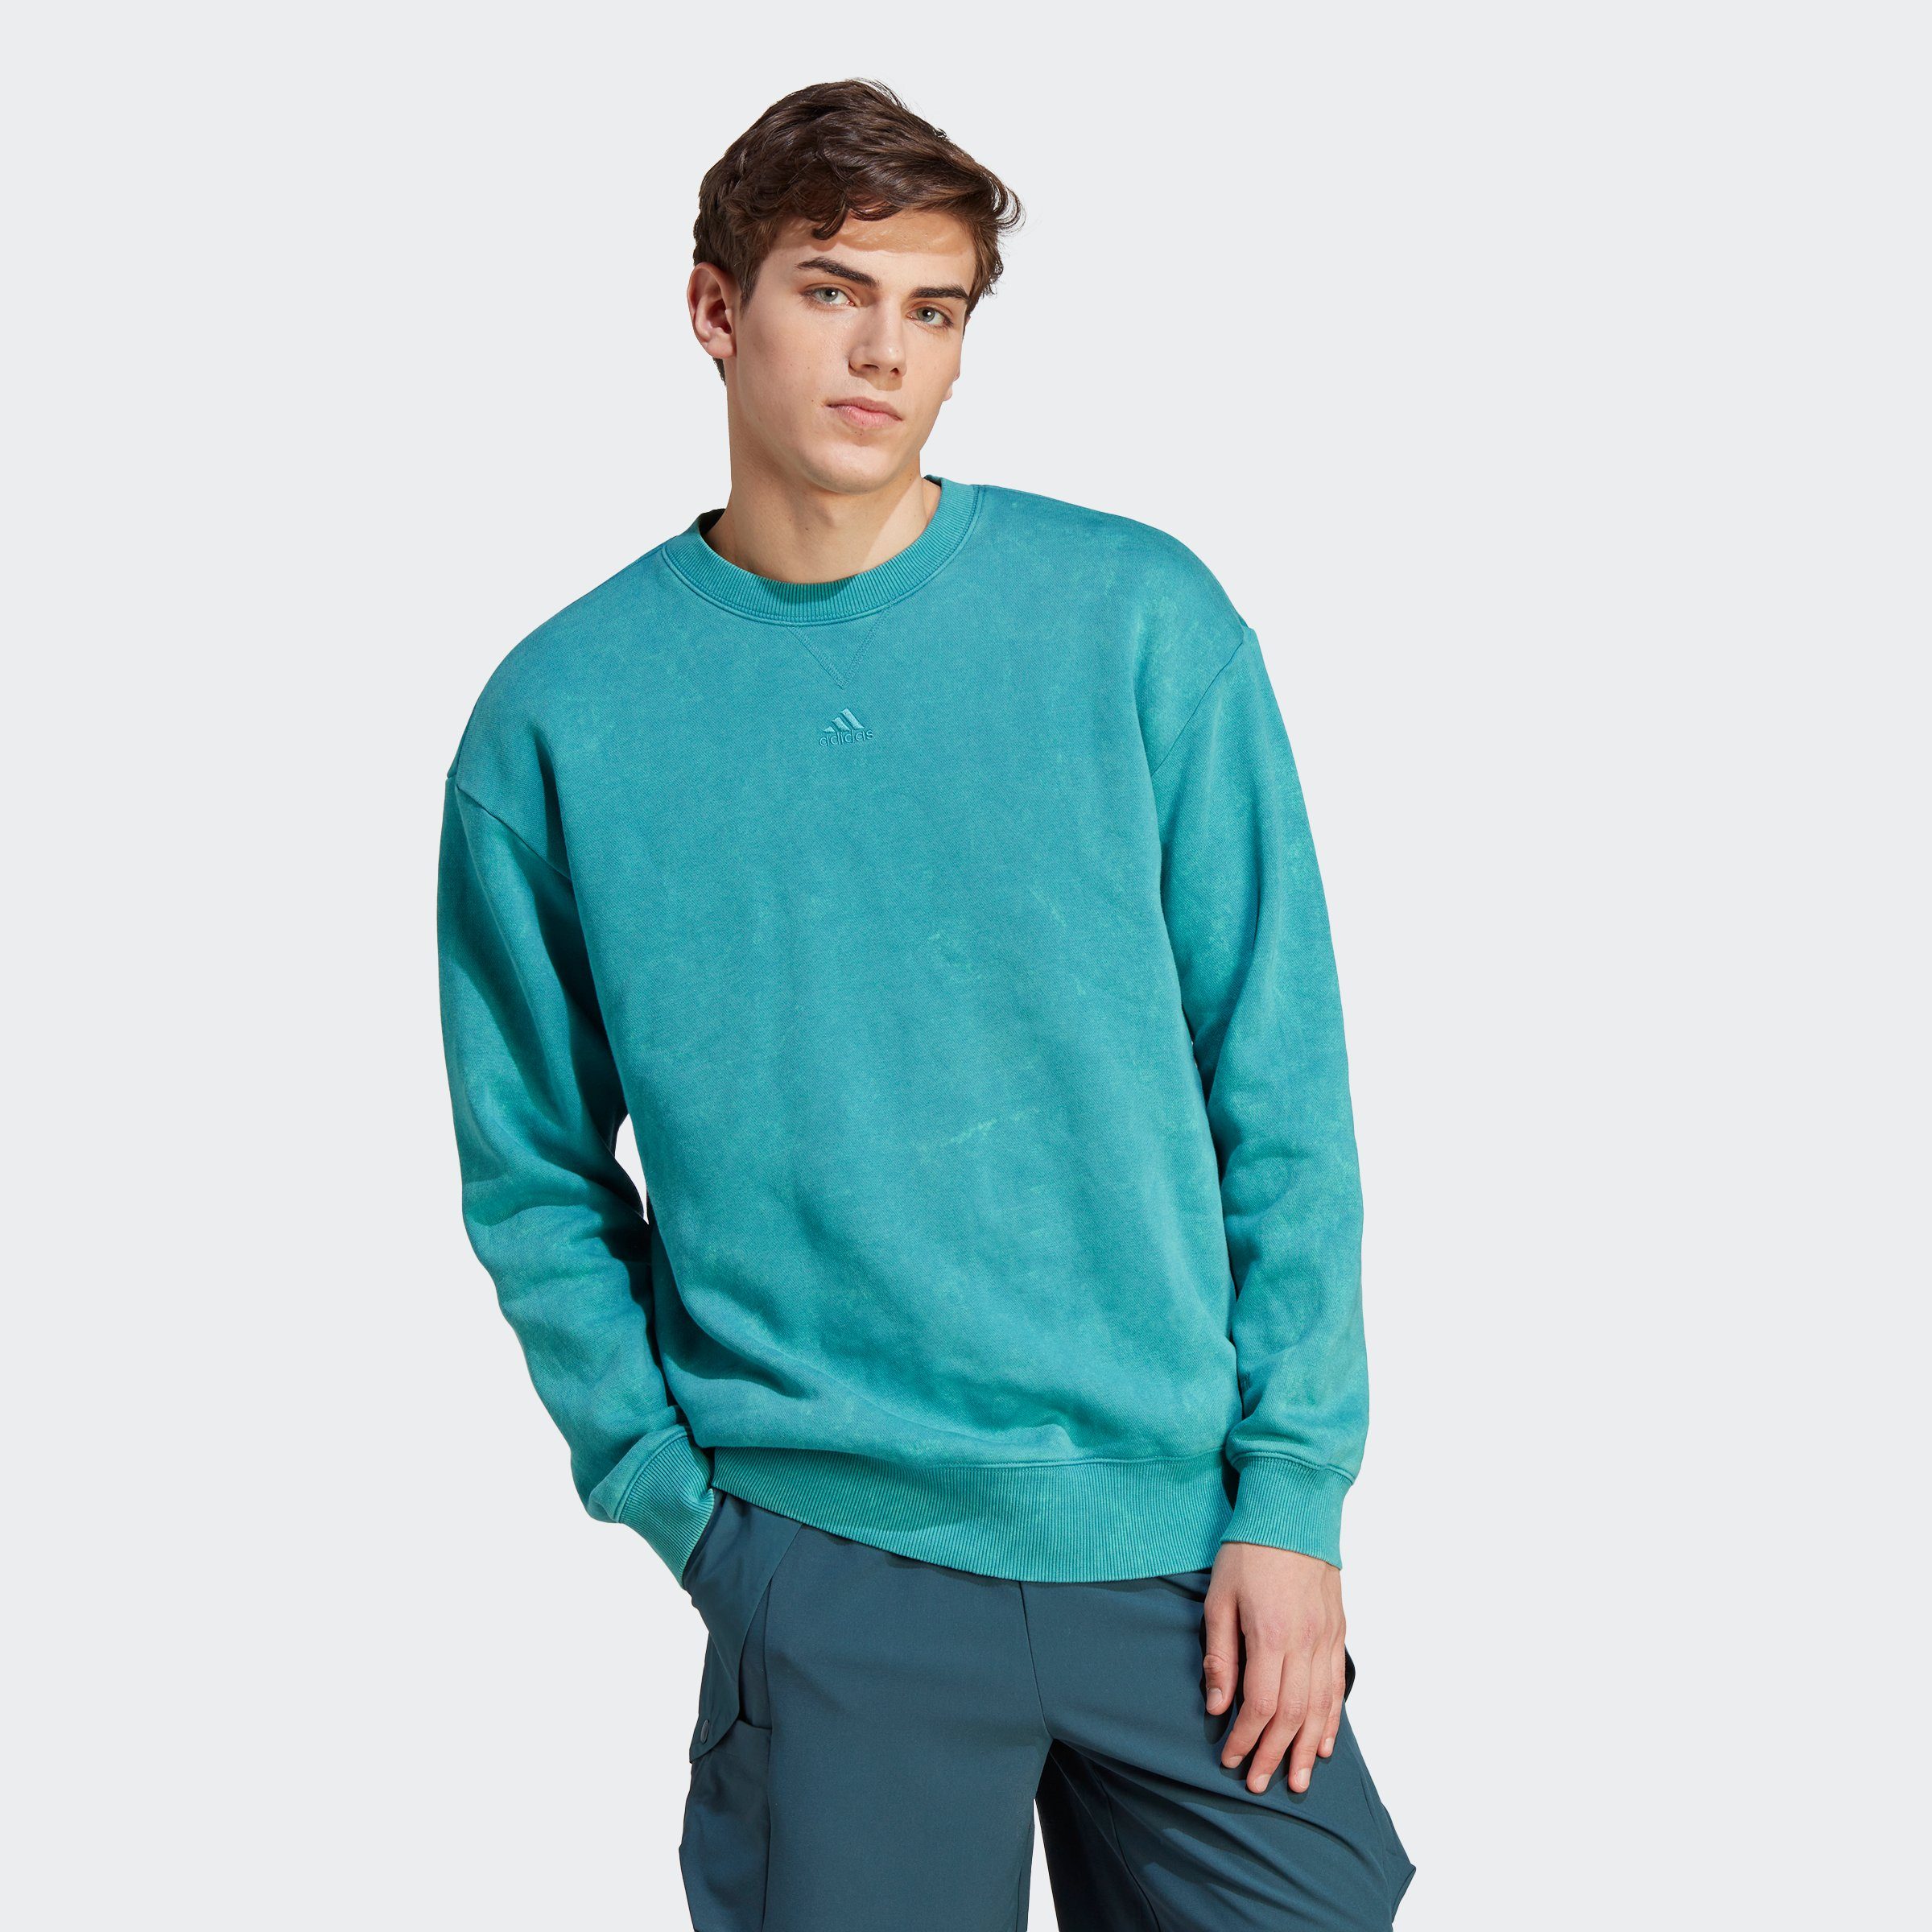 SZN Arctic SWT adidas ALL M Fusion Sweatshirt W Sportswear